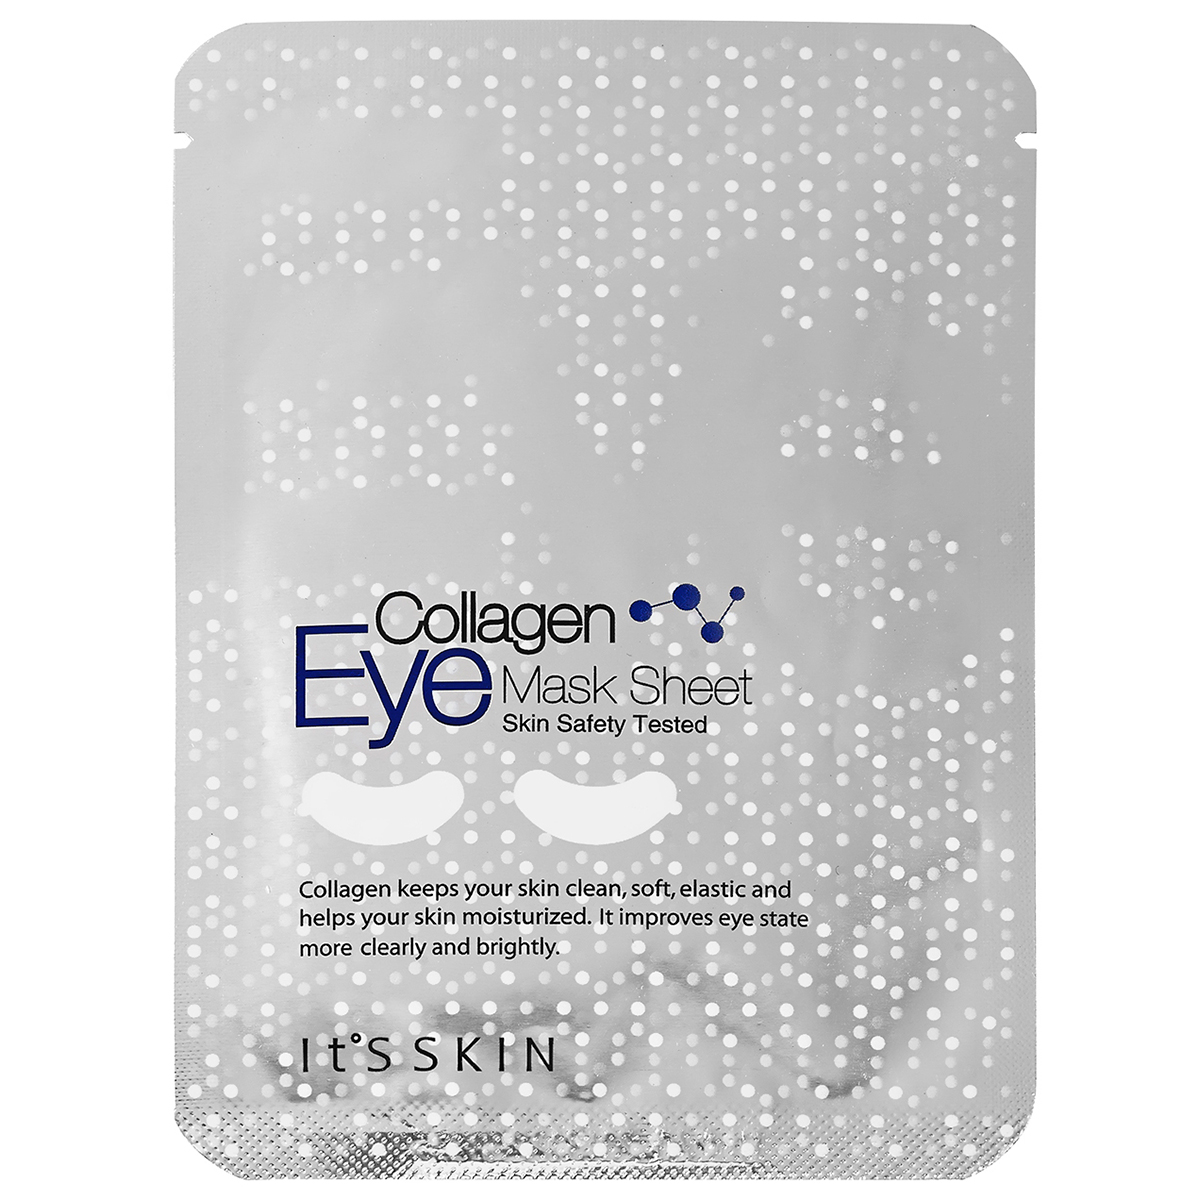 Eye mask sheet Collagen, It'S SKIN K-Beauty